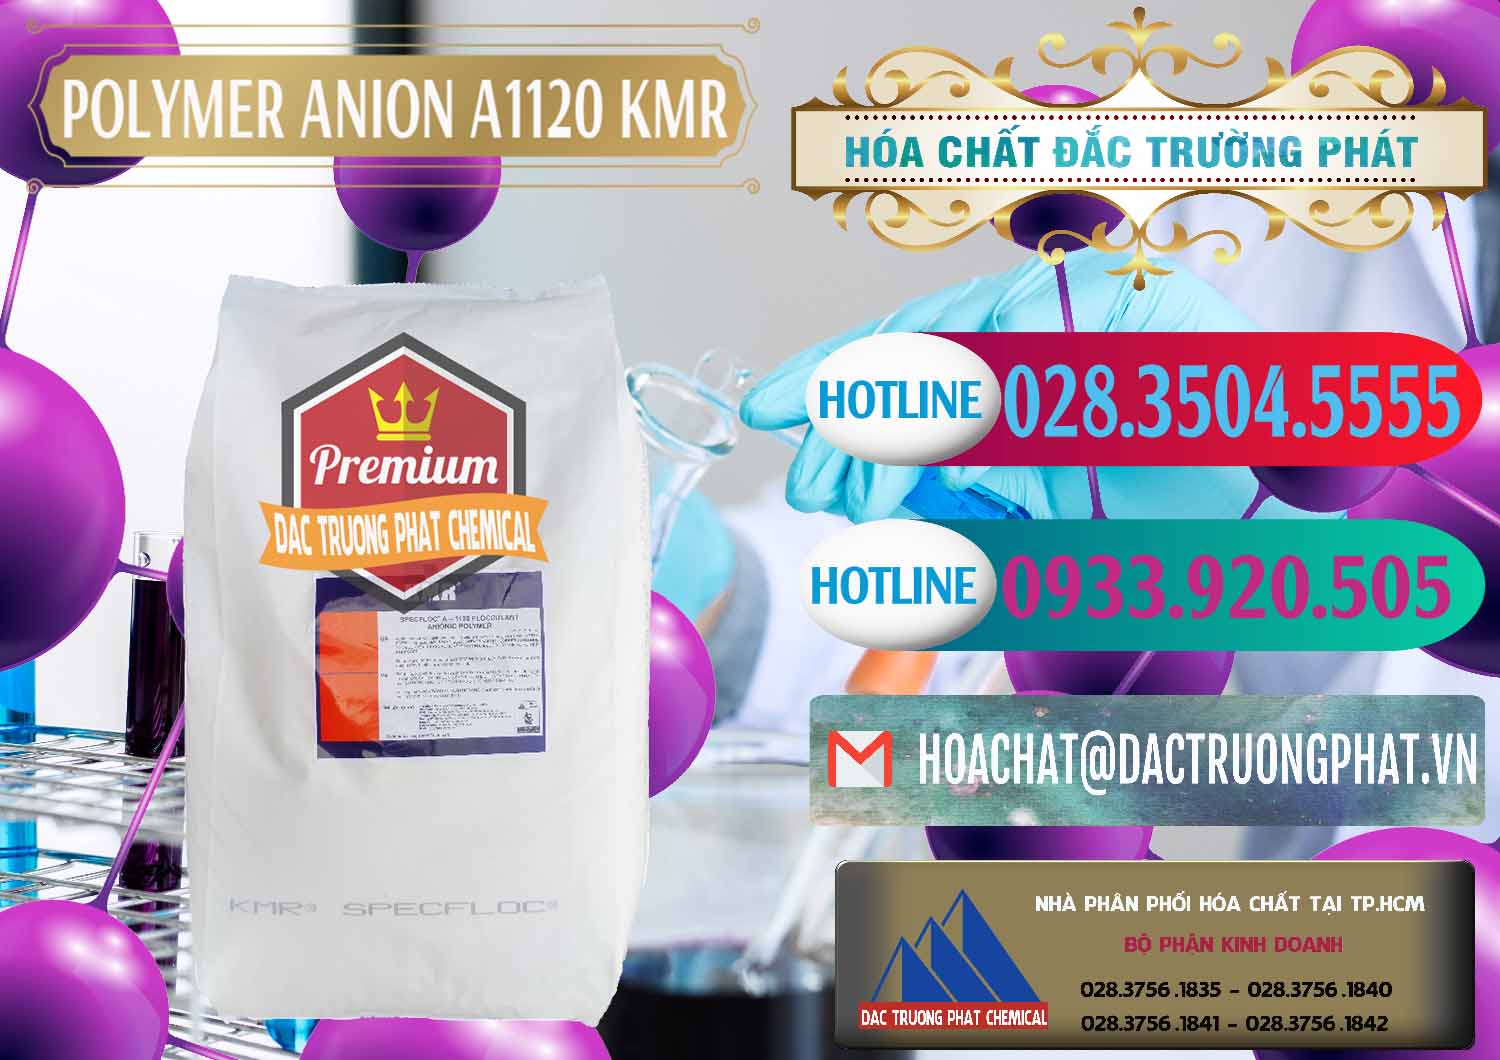 Công ty chuyên kinh doanh & bán Polymer Anion A1120 - KMR Anh Quốc England - 0119 - Cty bán ( cung cấp ) hóa chất tại TP.HCM - truongphat.vn